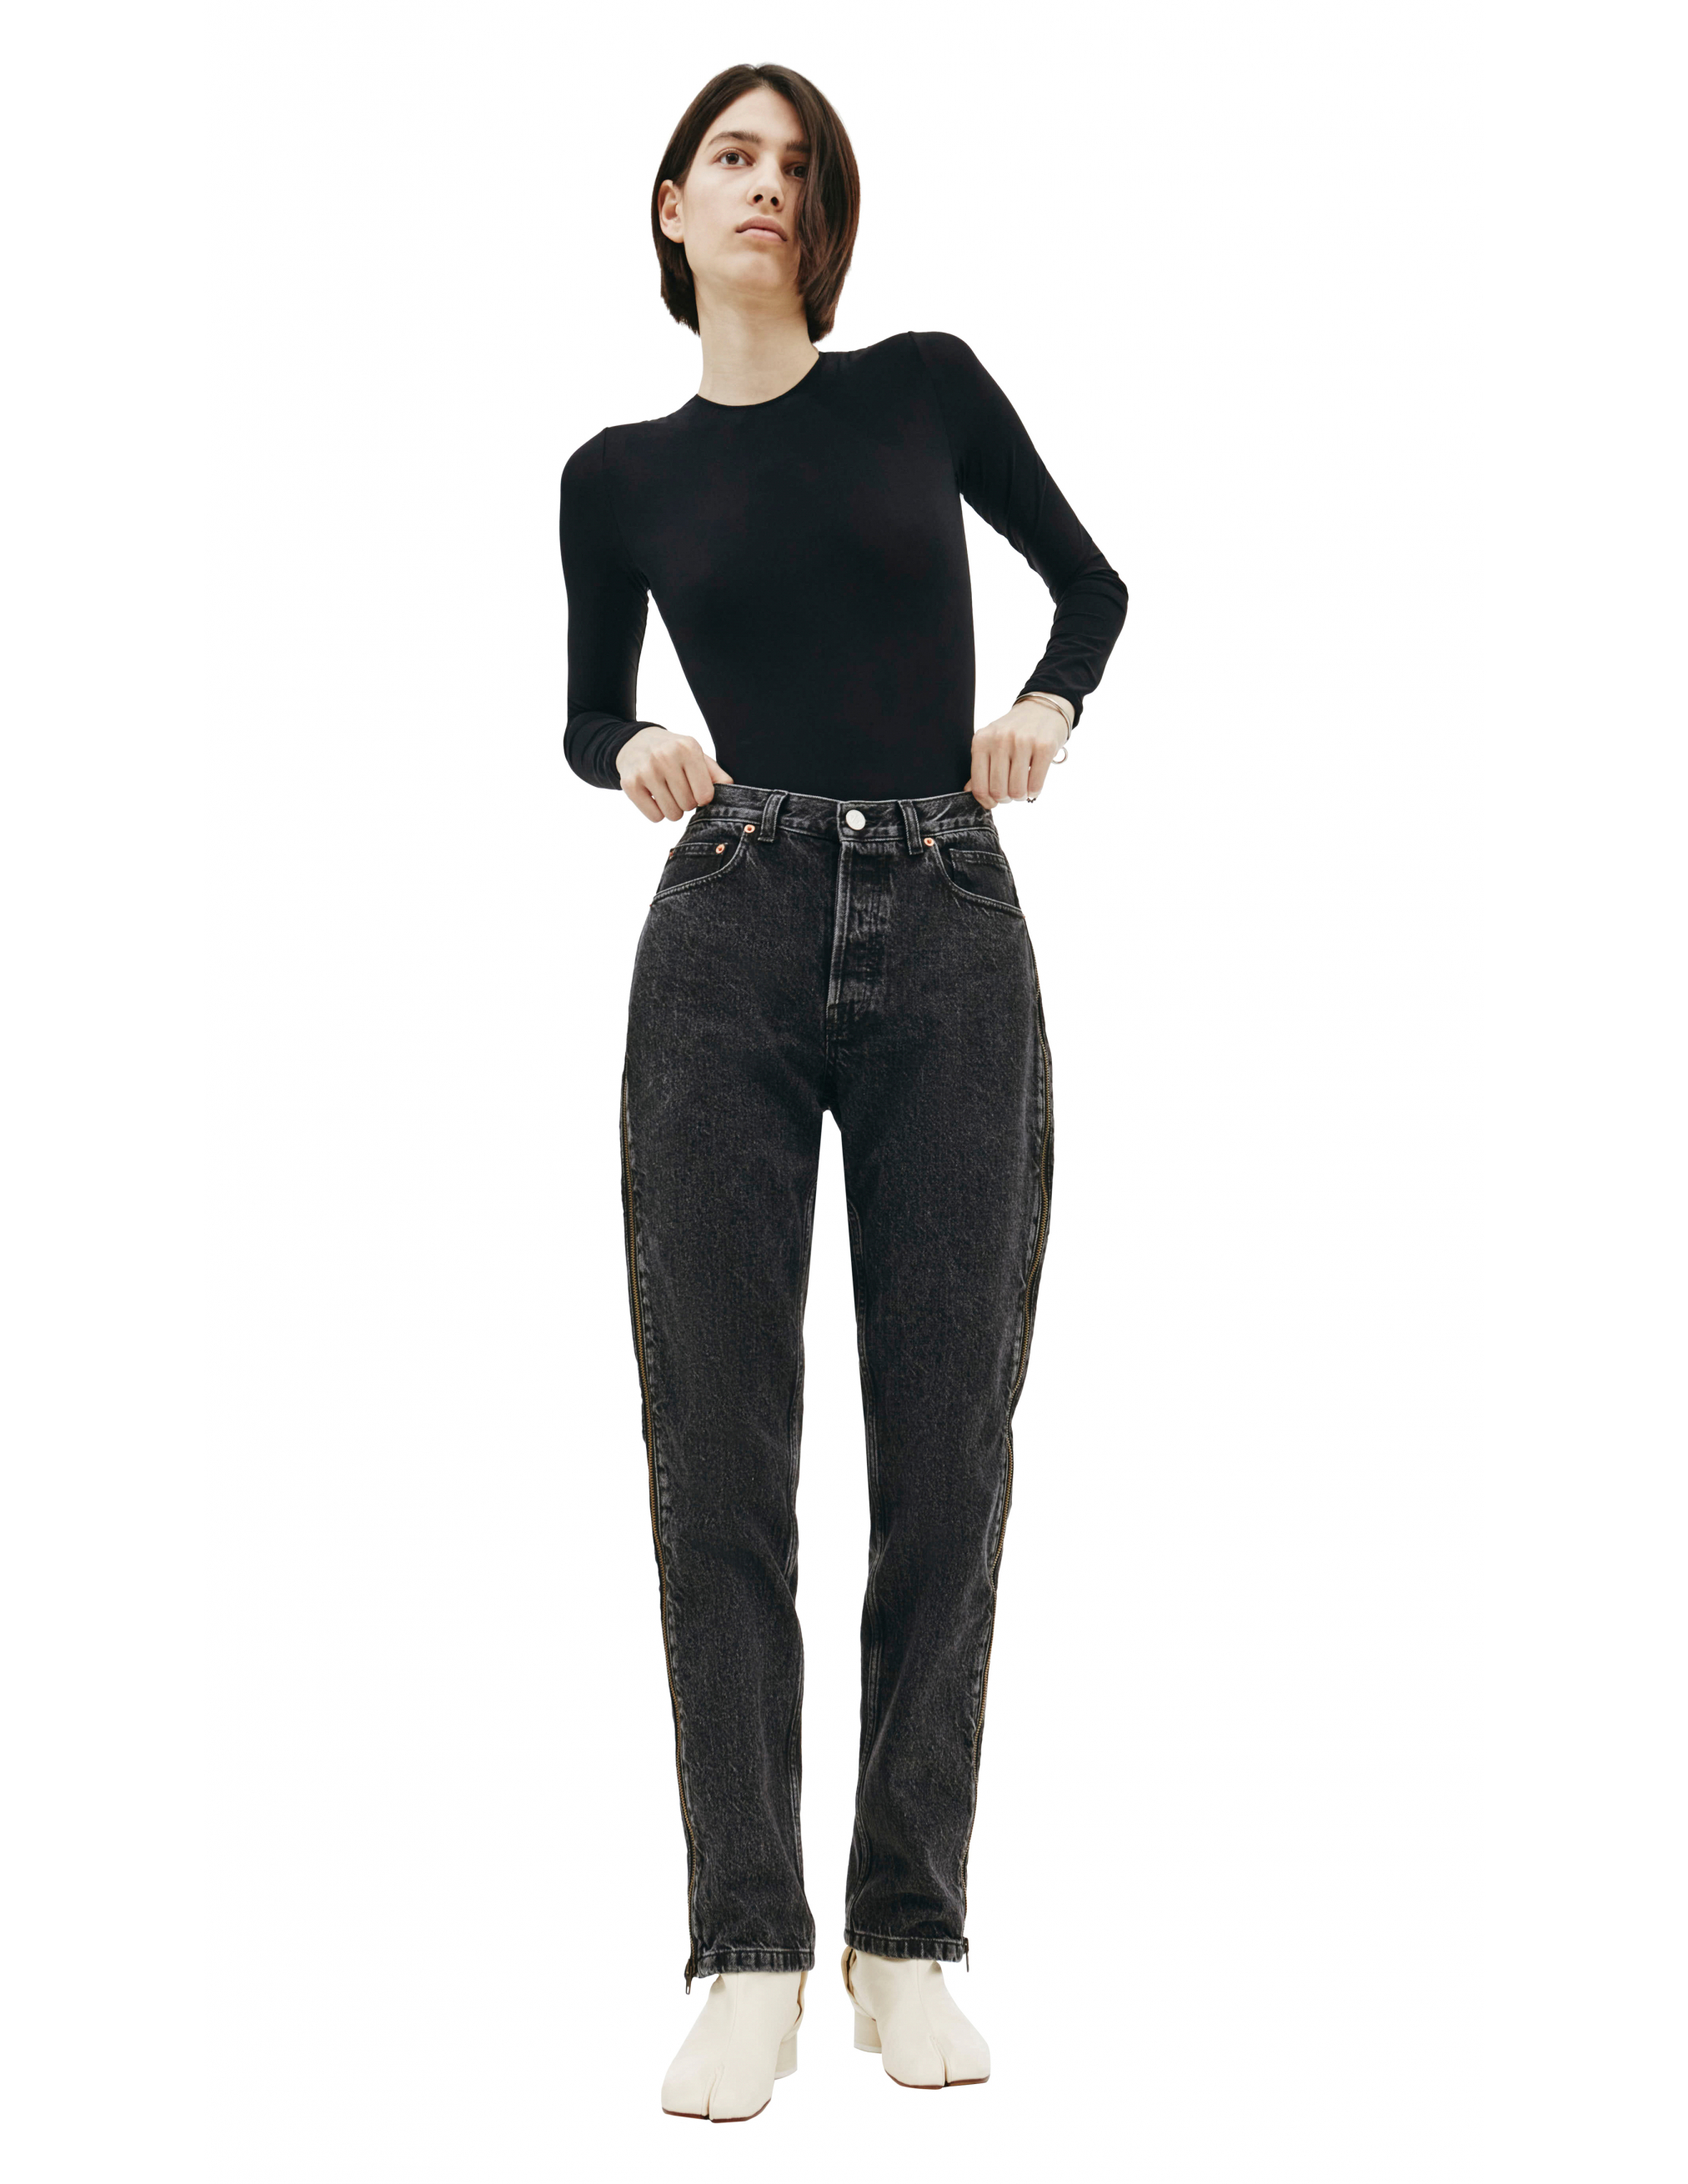 Черные джинсы с молниями по бокам - Vetements SS20PA332/blk Фото 5